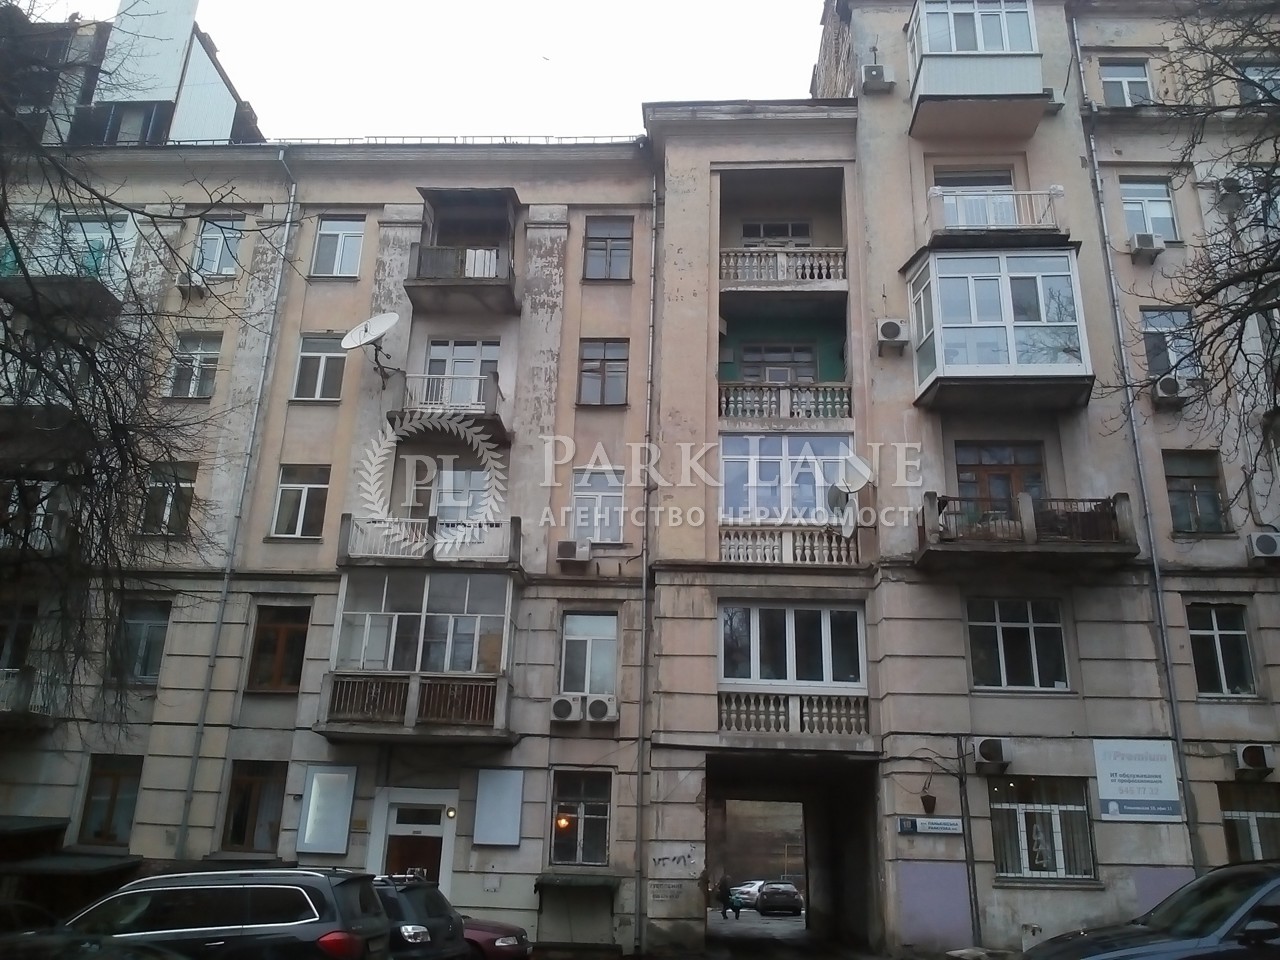  Нежилое помещение, ул. Паньковская, Киев, G-816318 - Фото 4